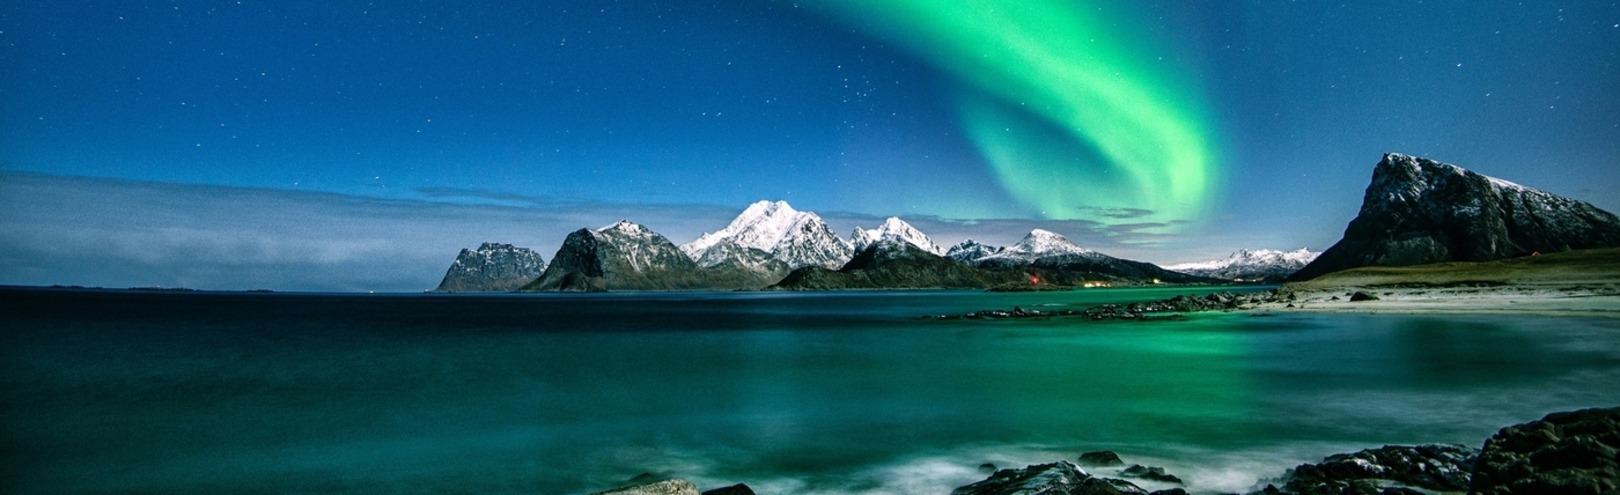 Northen lights in Norway